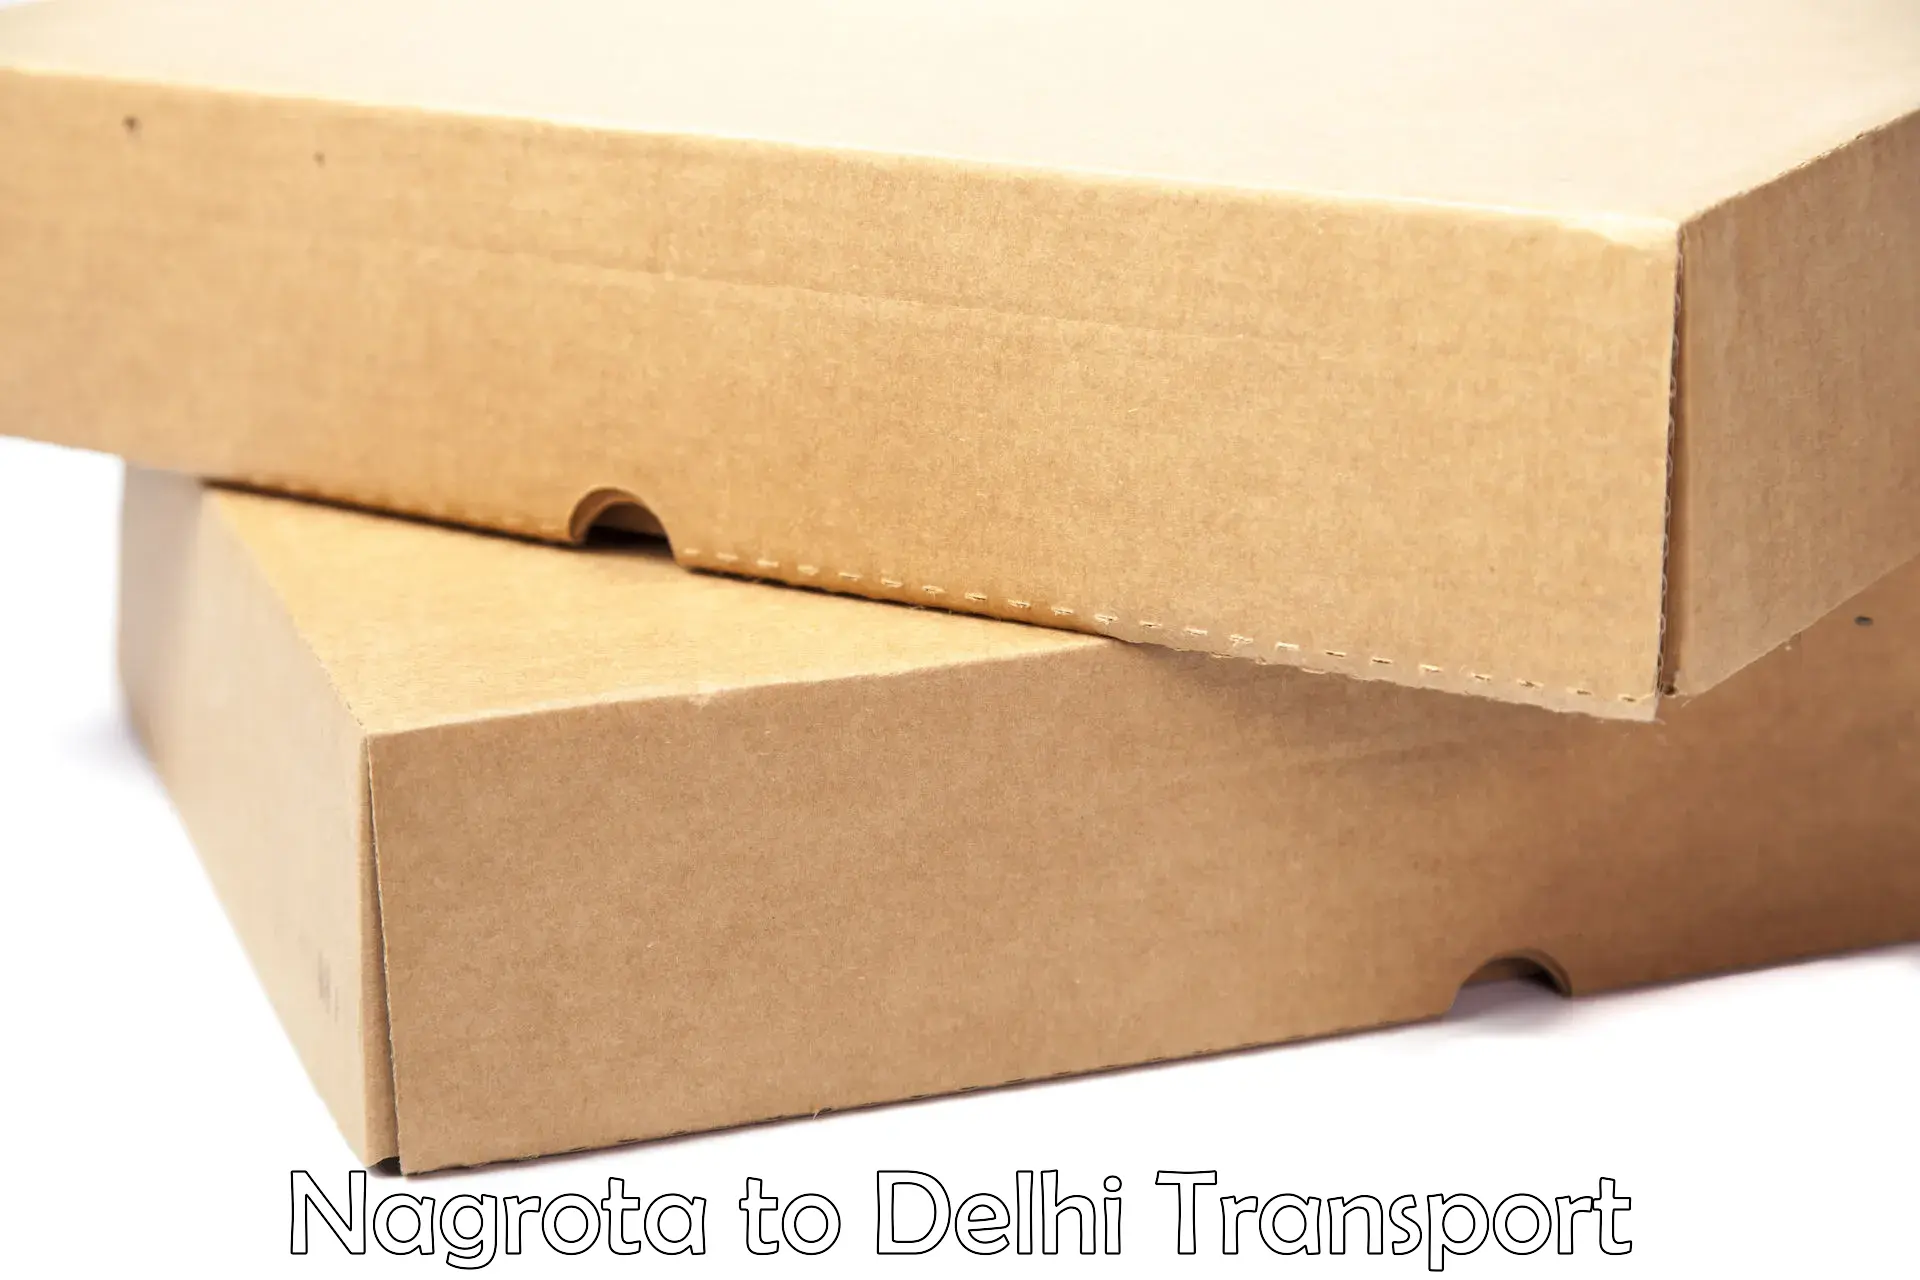 Interstate transport services Nagrota to Jamia Millia Islamia New Delhi